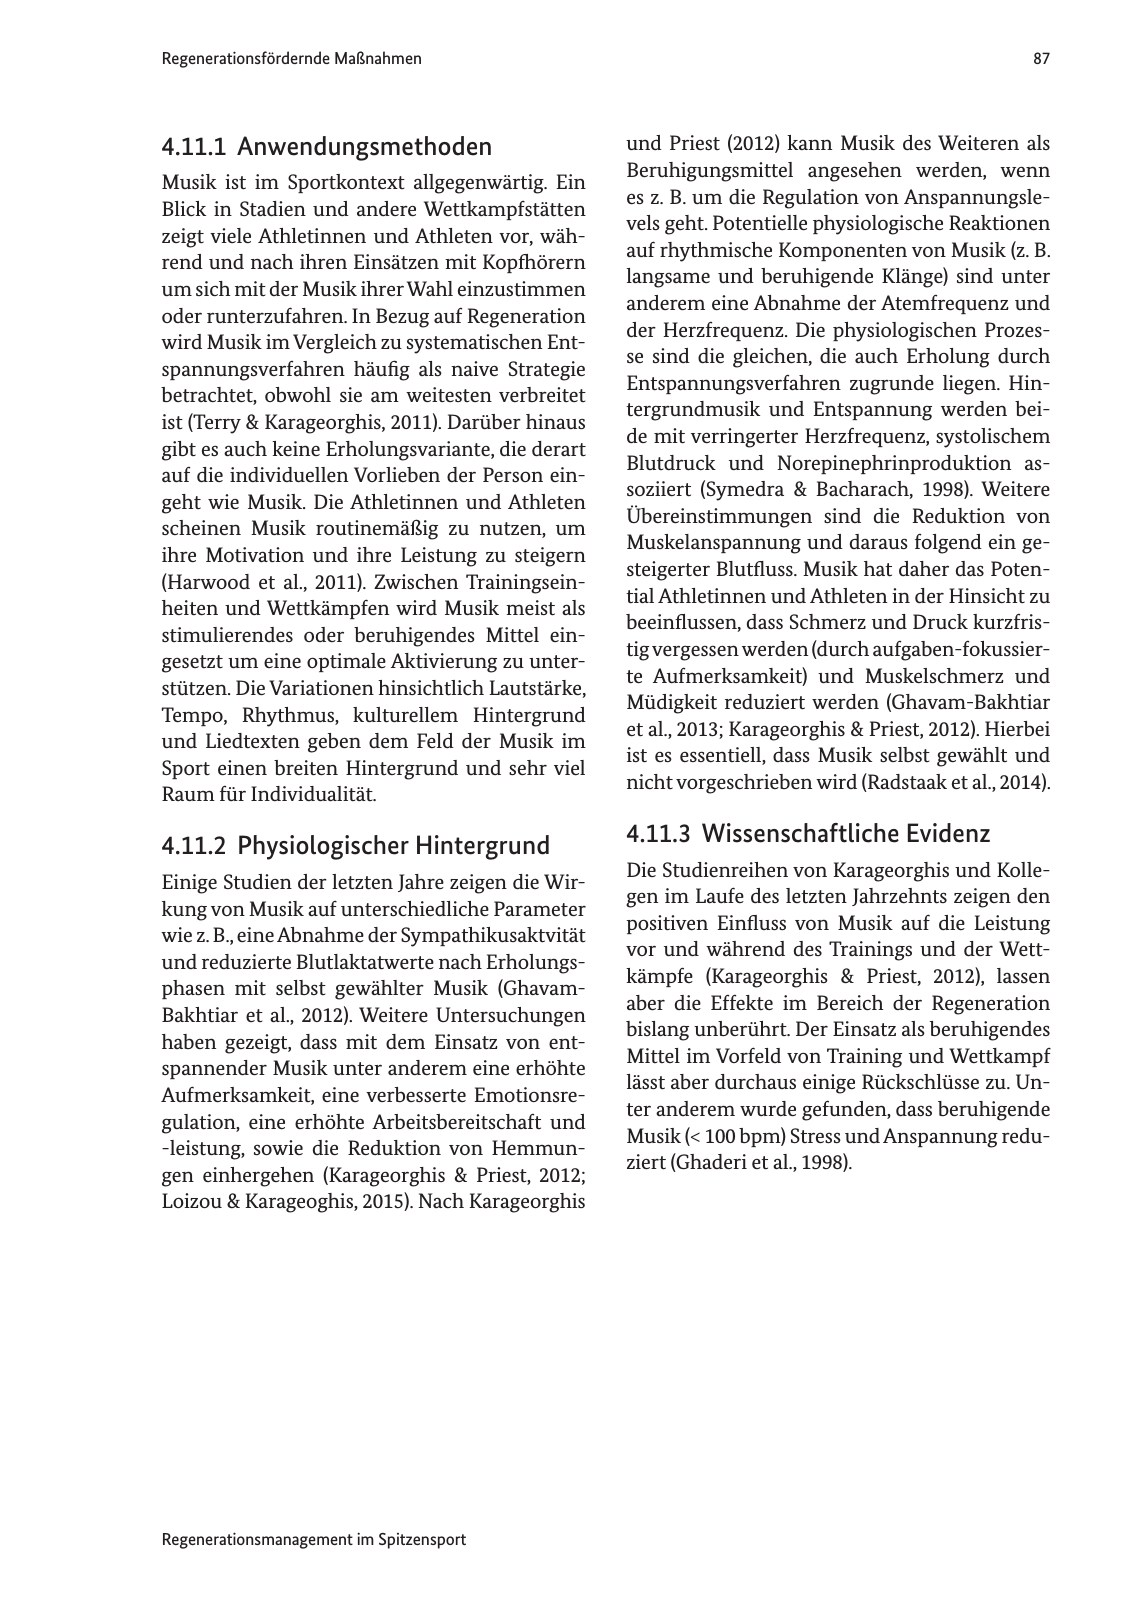 Vorschau Handreichung Regmann / Regenerationsmanagement im Spitzensport Seite 88